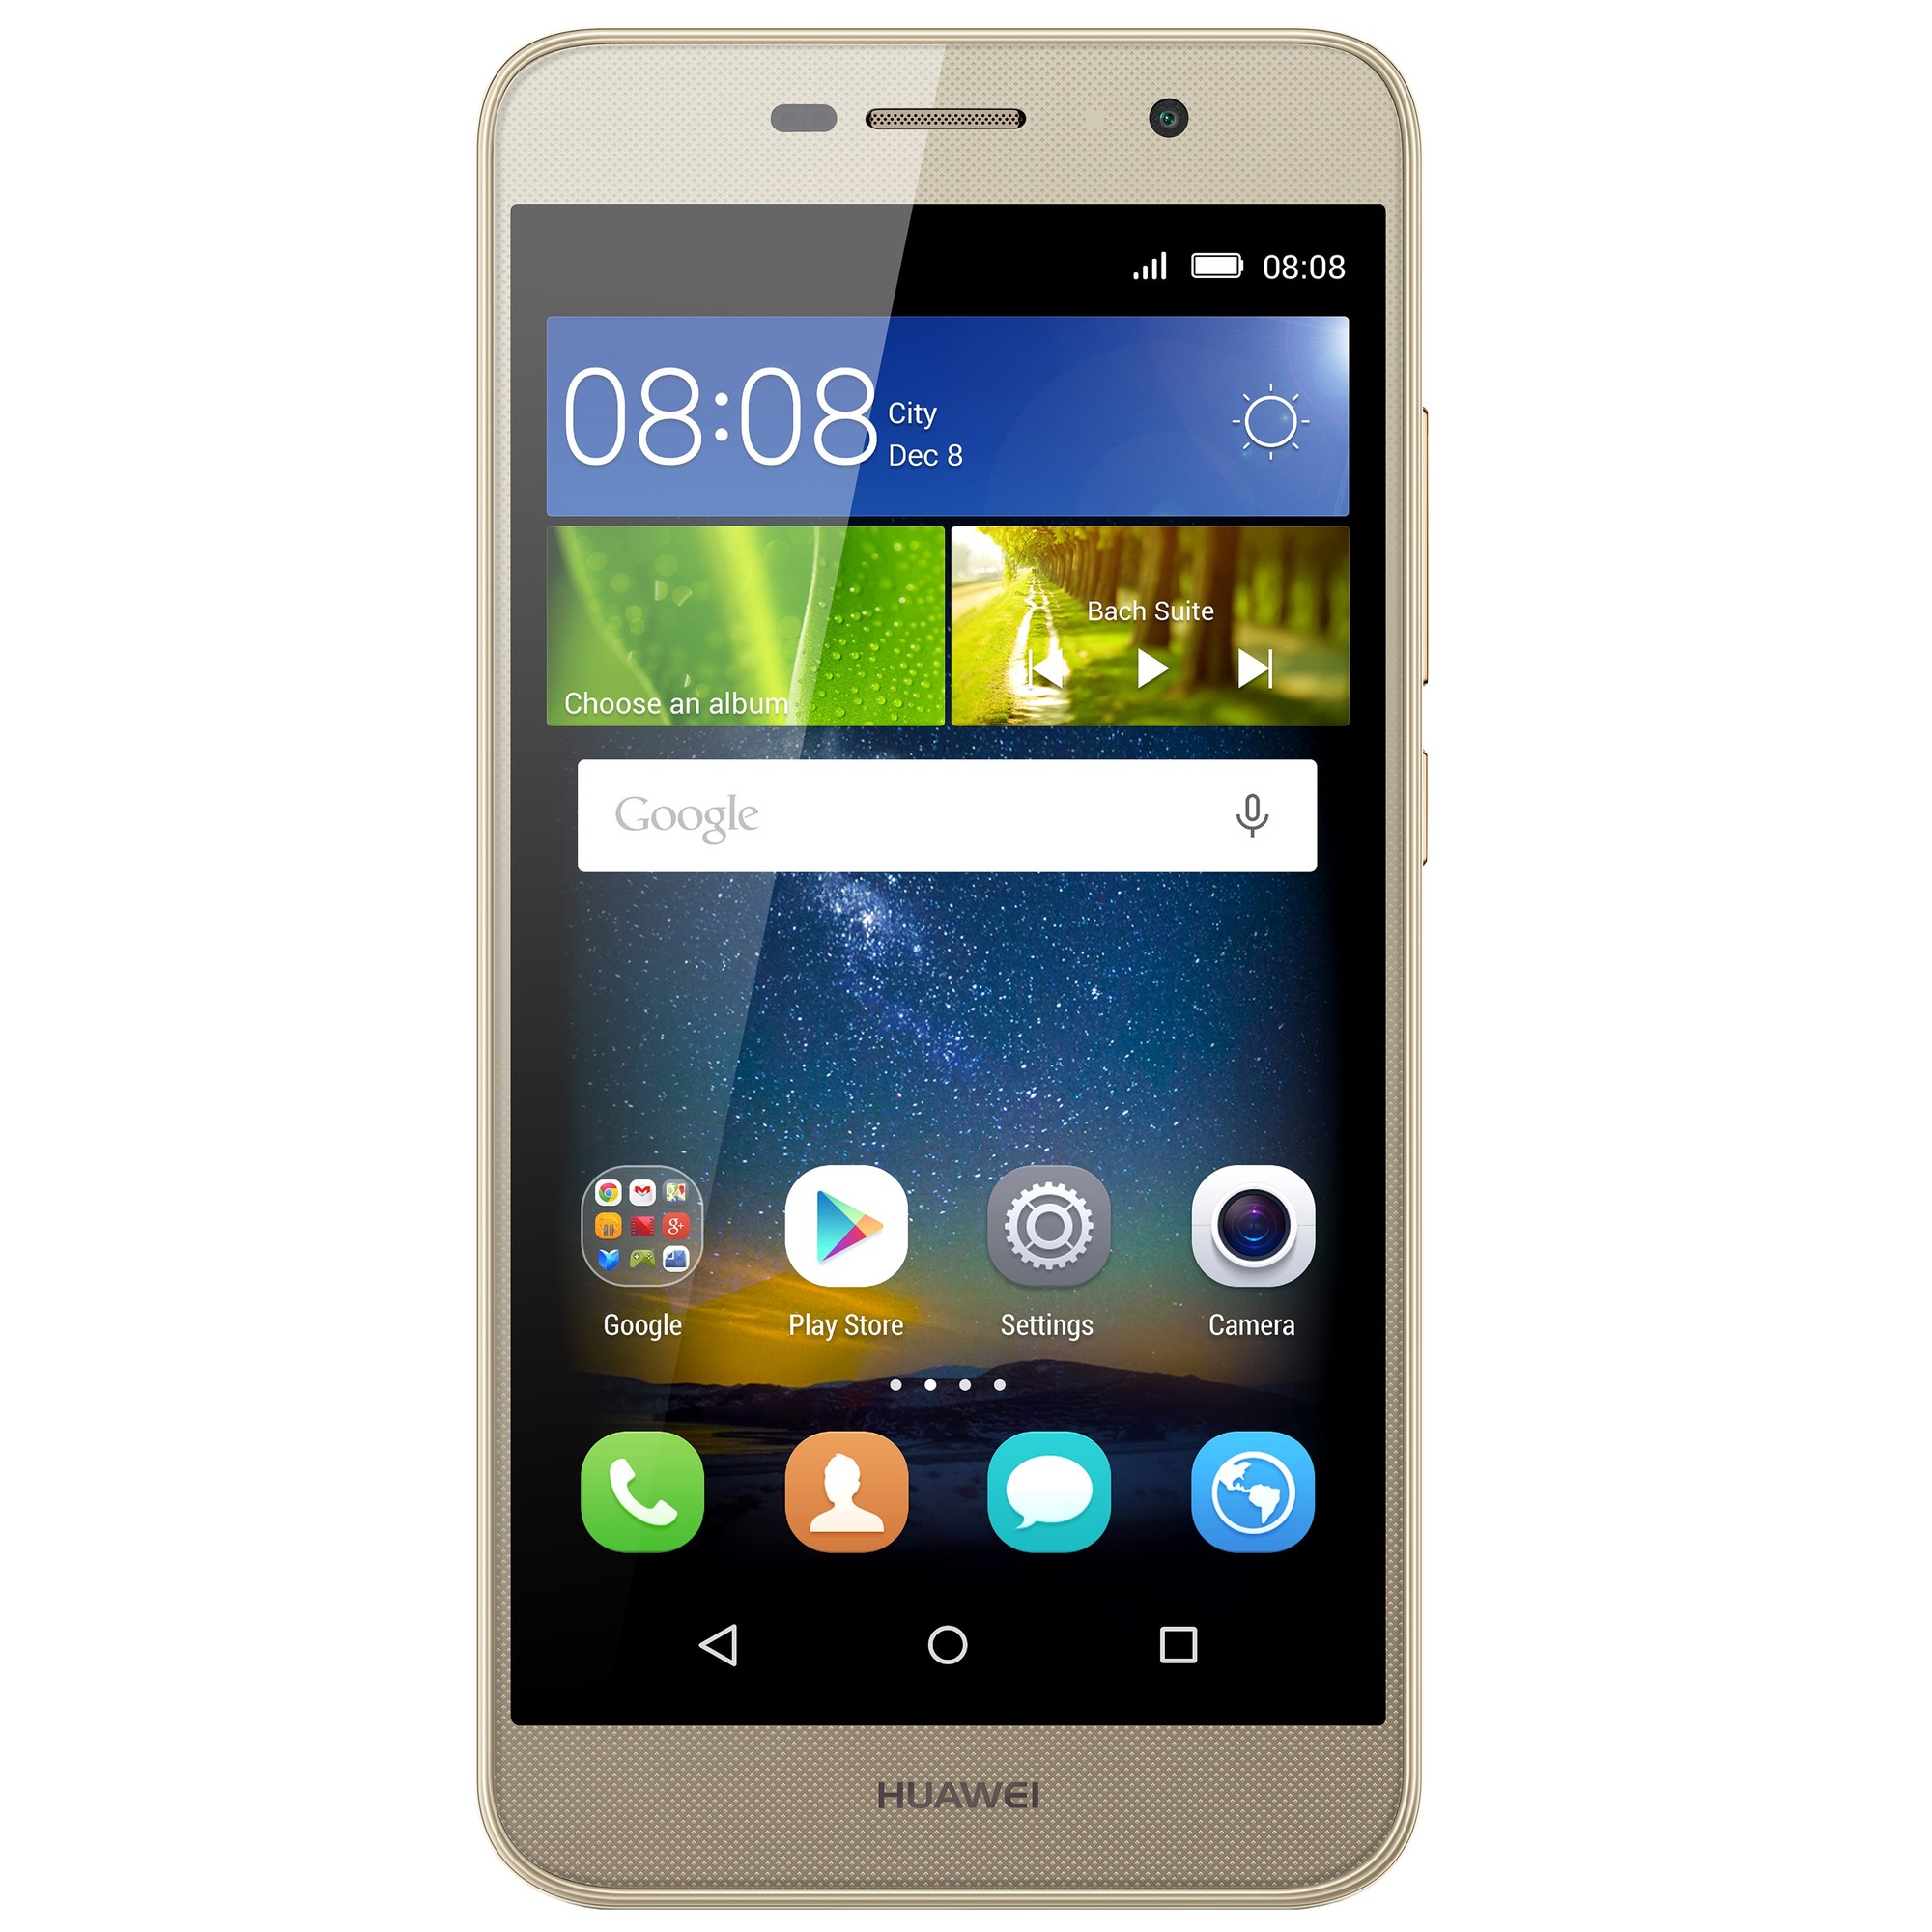 Huawei Y6 Pro dual-SIM smartphone - guld | Elgiganten